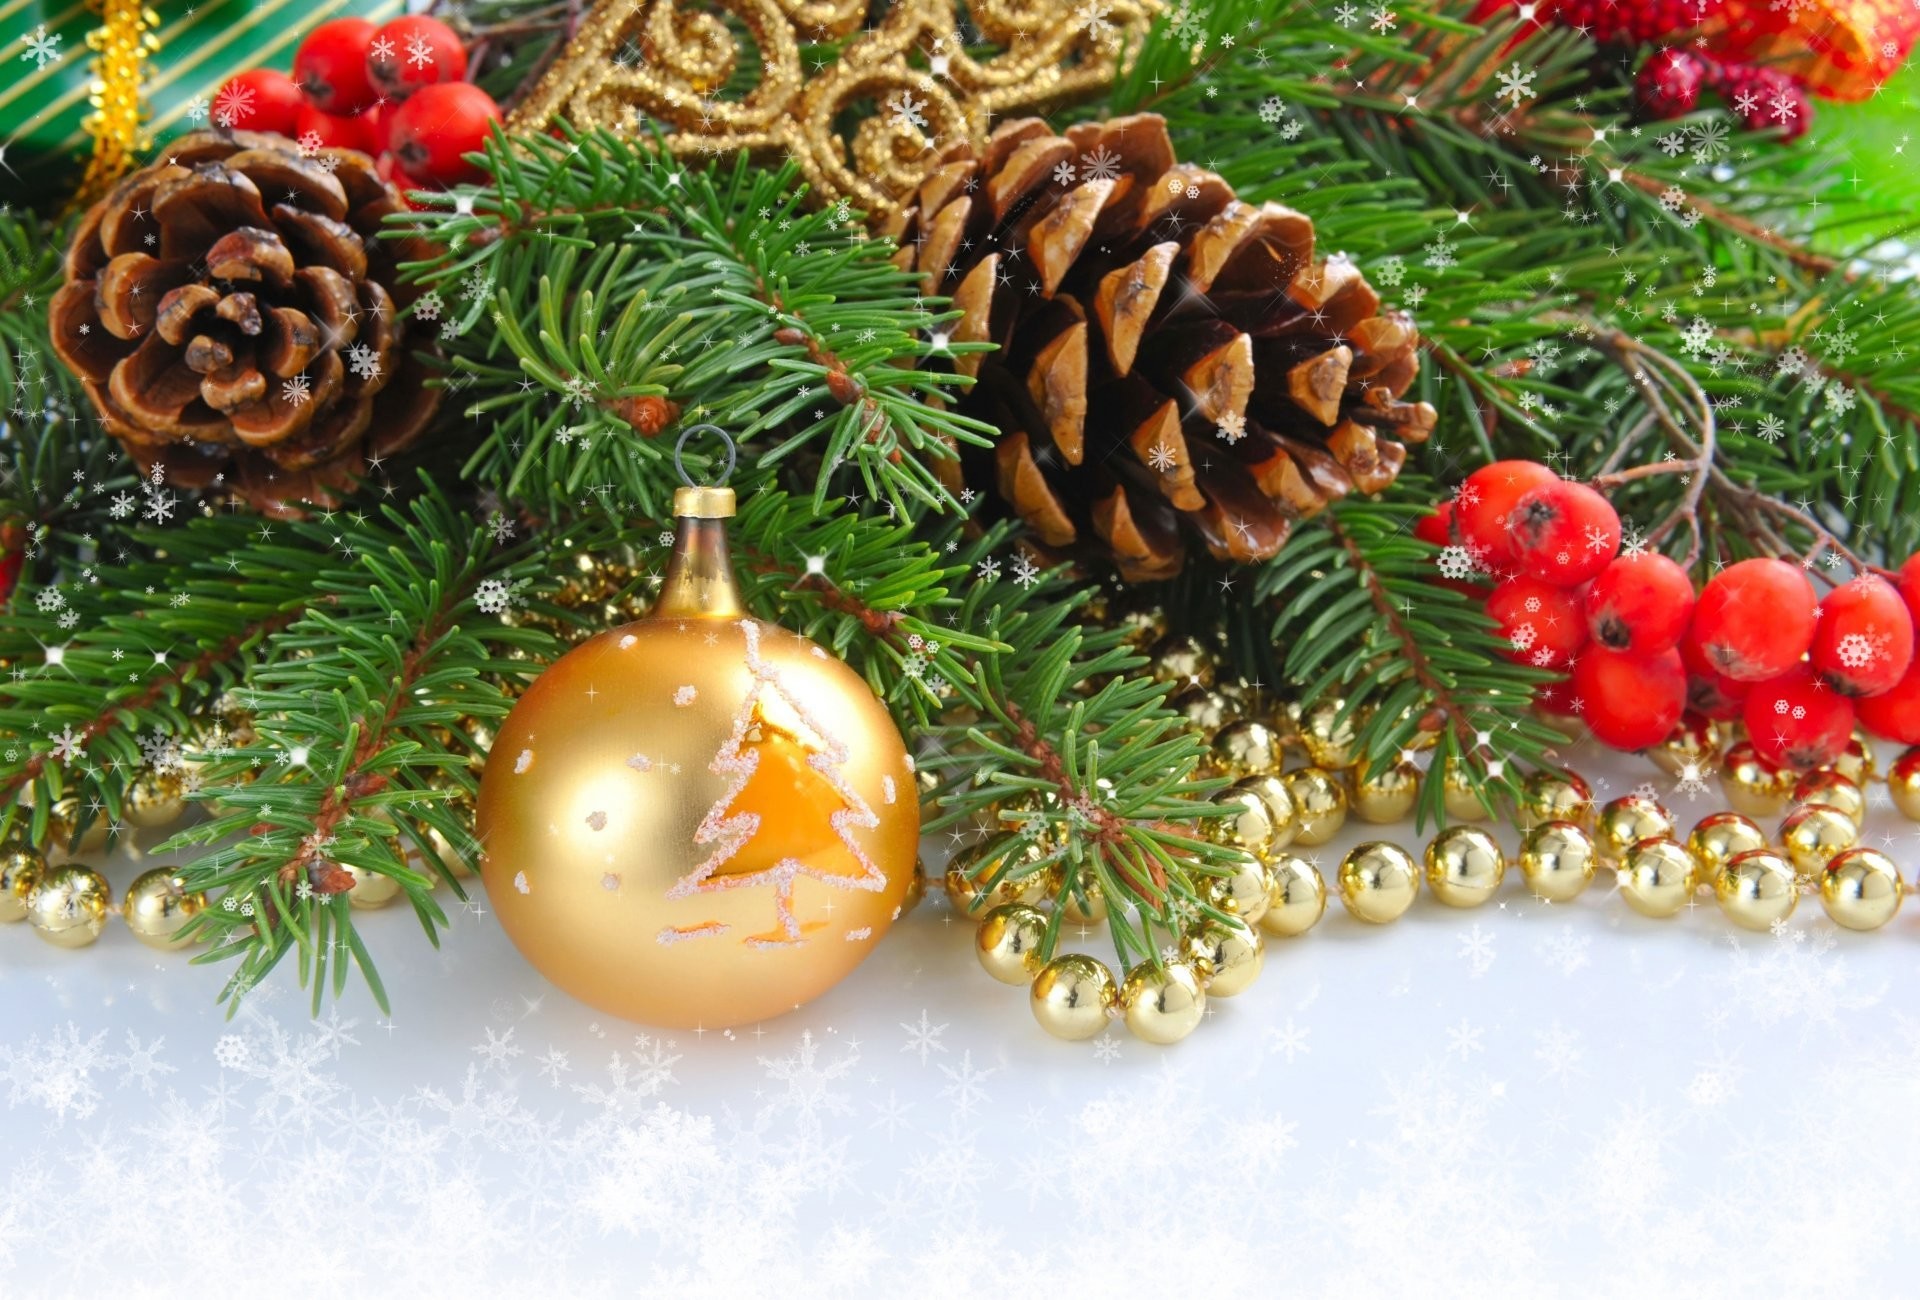 ホリー壁紙,クリスマスツリー,クリスマスの飾り,クリスマスオーナメント,針葉樹コーン,木